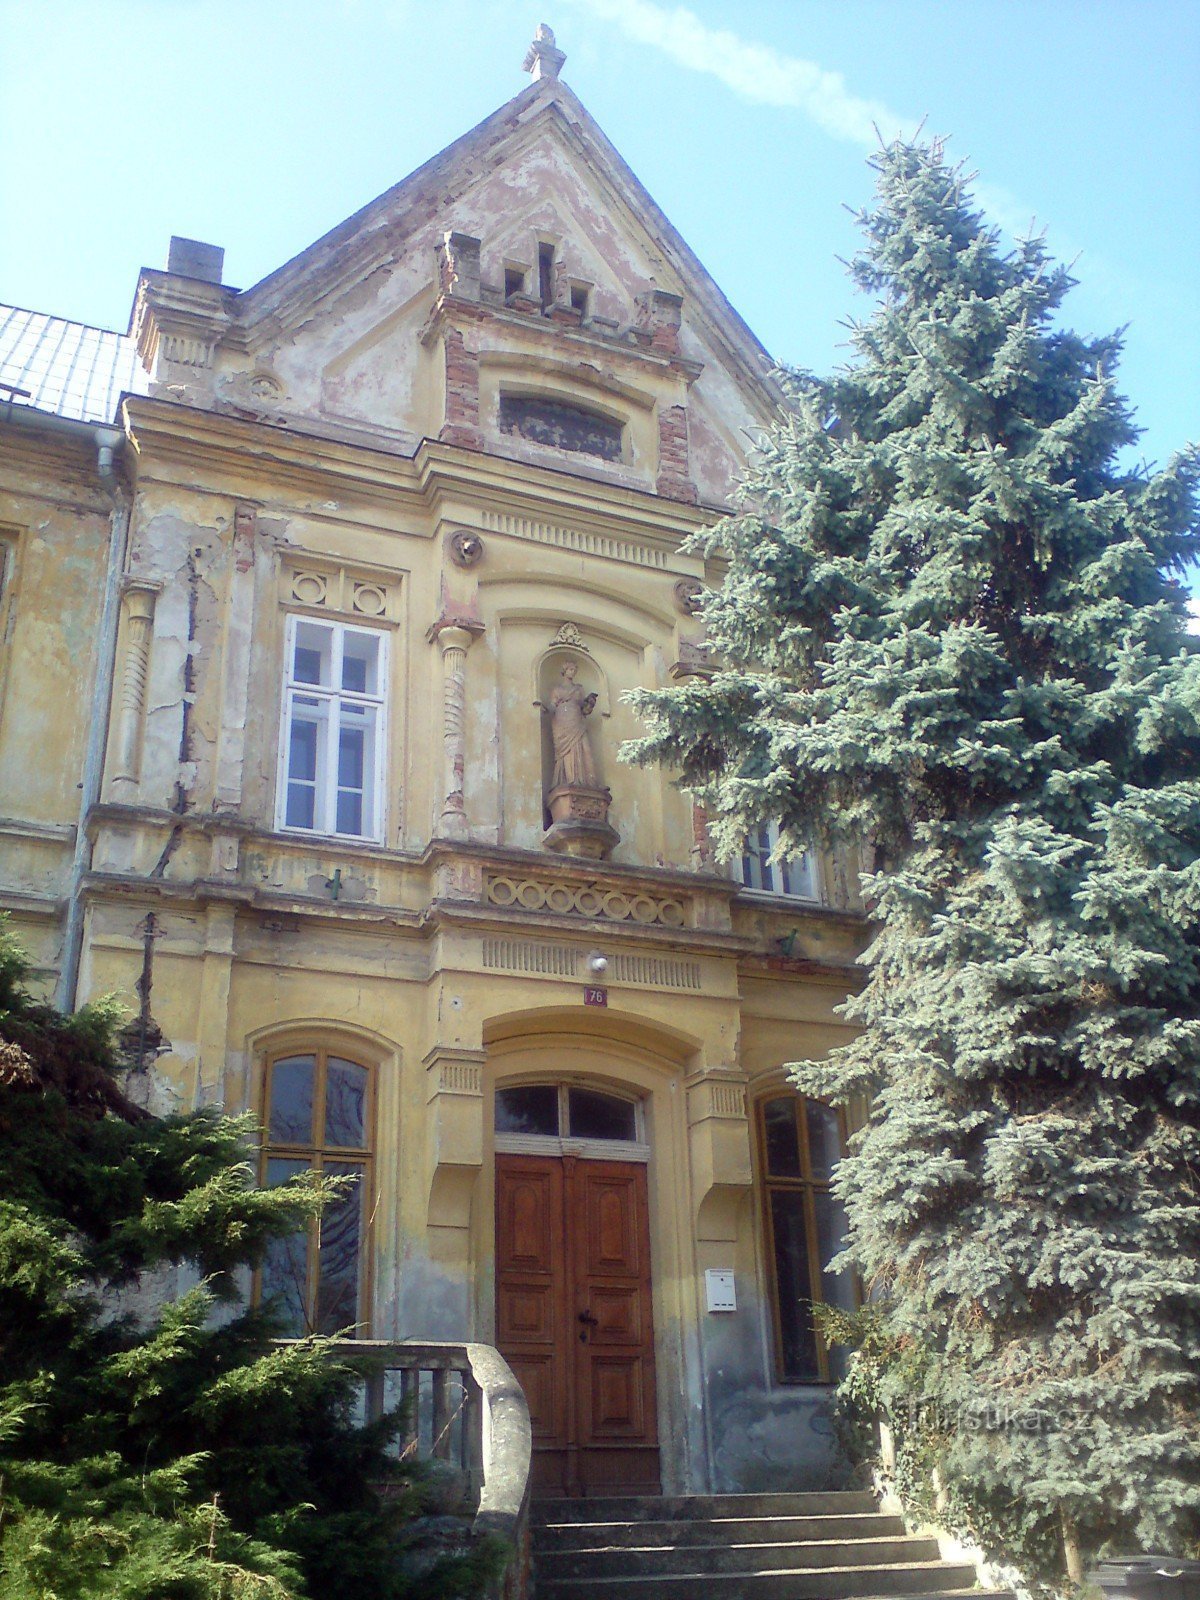 frontowe i główne wejście do budynku szkolnego - po prawej stronie srebrny świerk zdobi klatkę schodową, nie